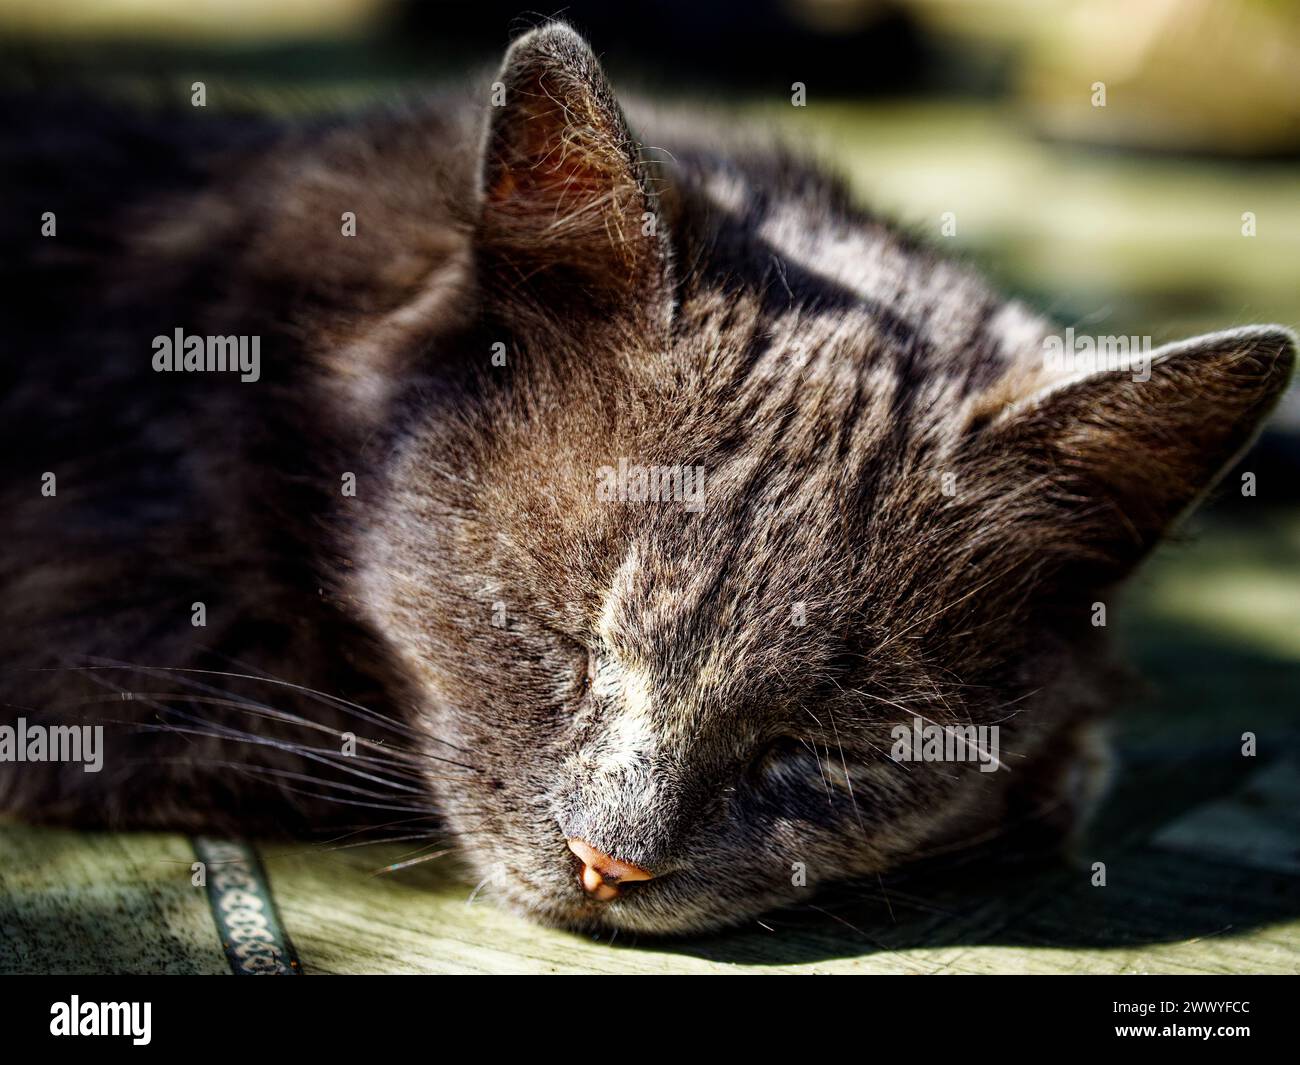 Immagine ravvicinata di un gatto riposante su una superficie in legno, inondata di luce naturale, che mostra dettagli di pelliccia grigia e marrone. Foto Stock